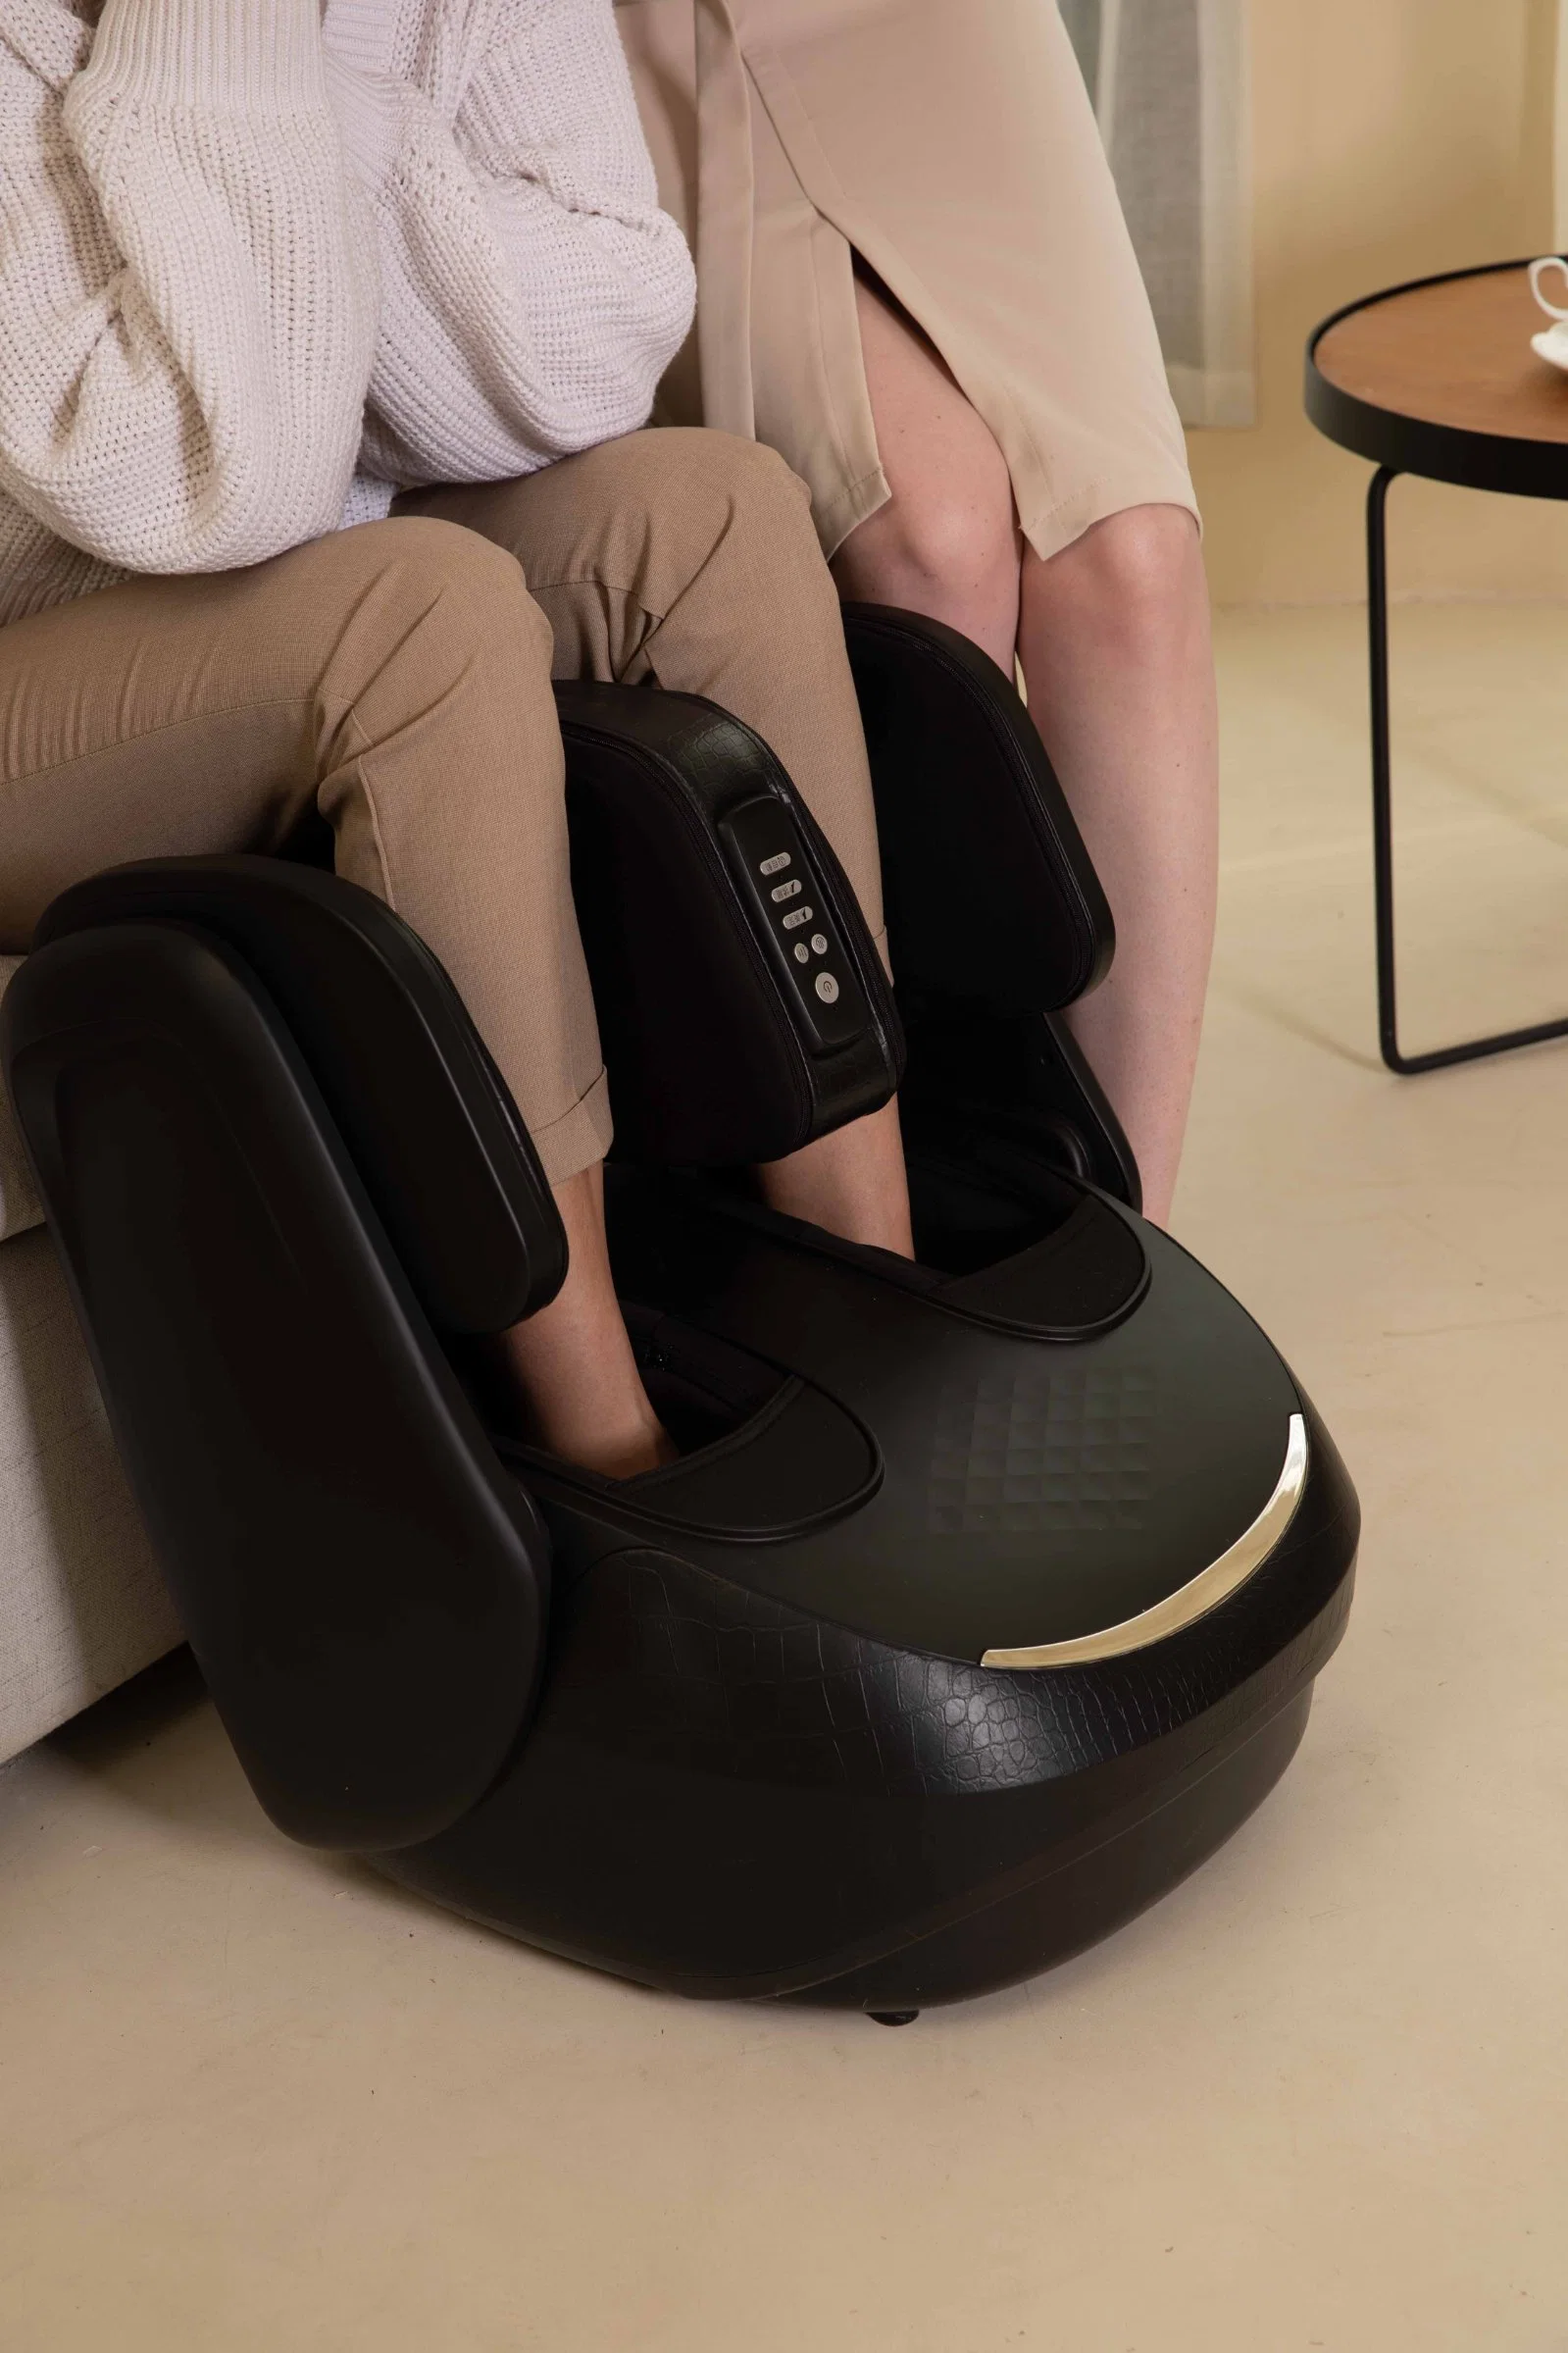 New OEM Foot Massager Leg Massager Calf Massager